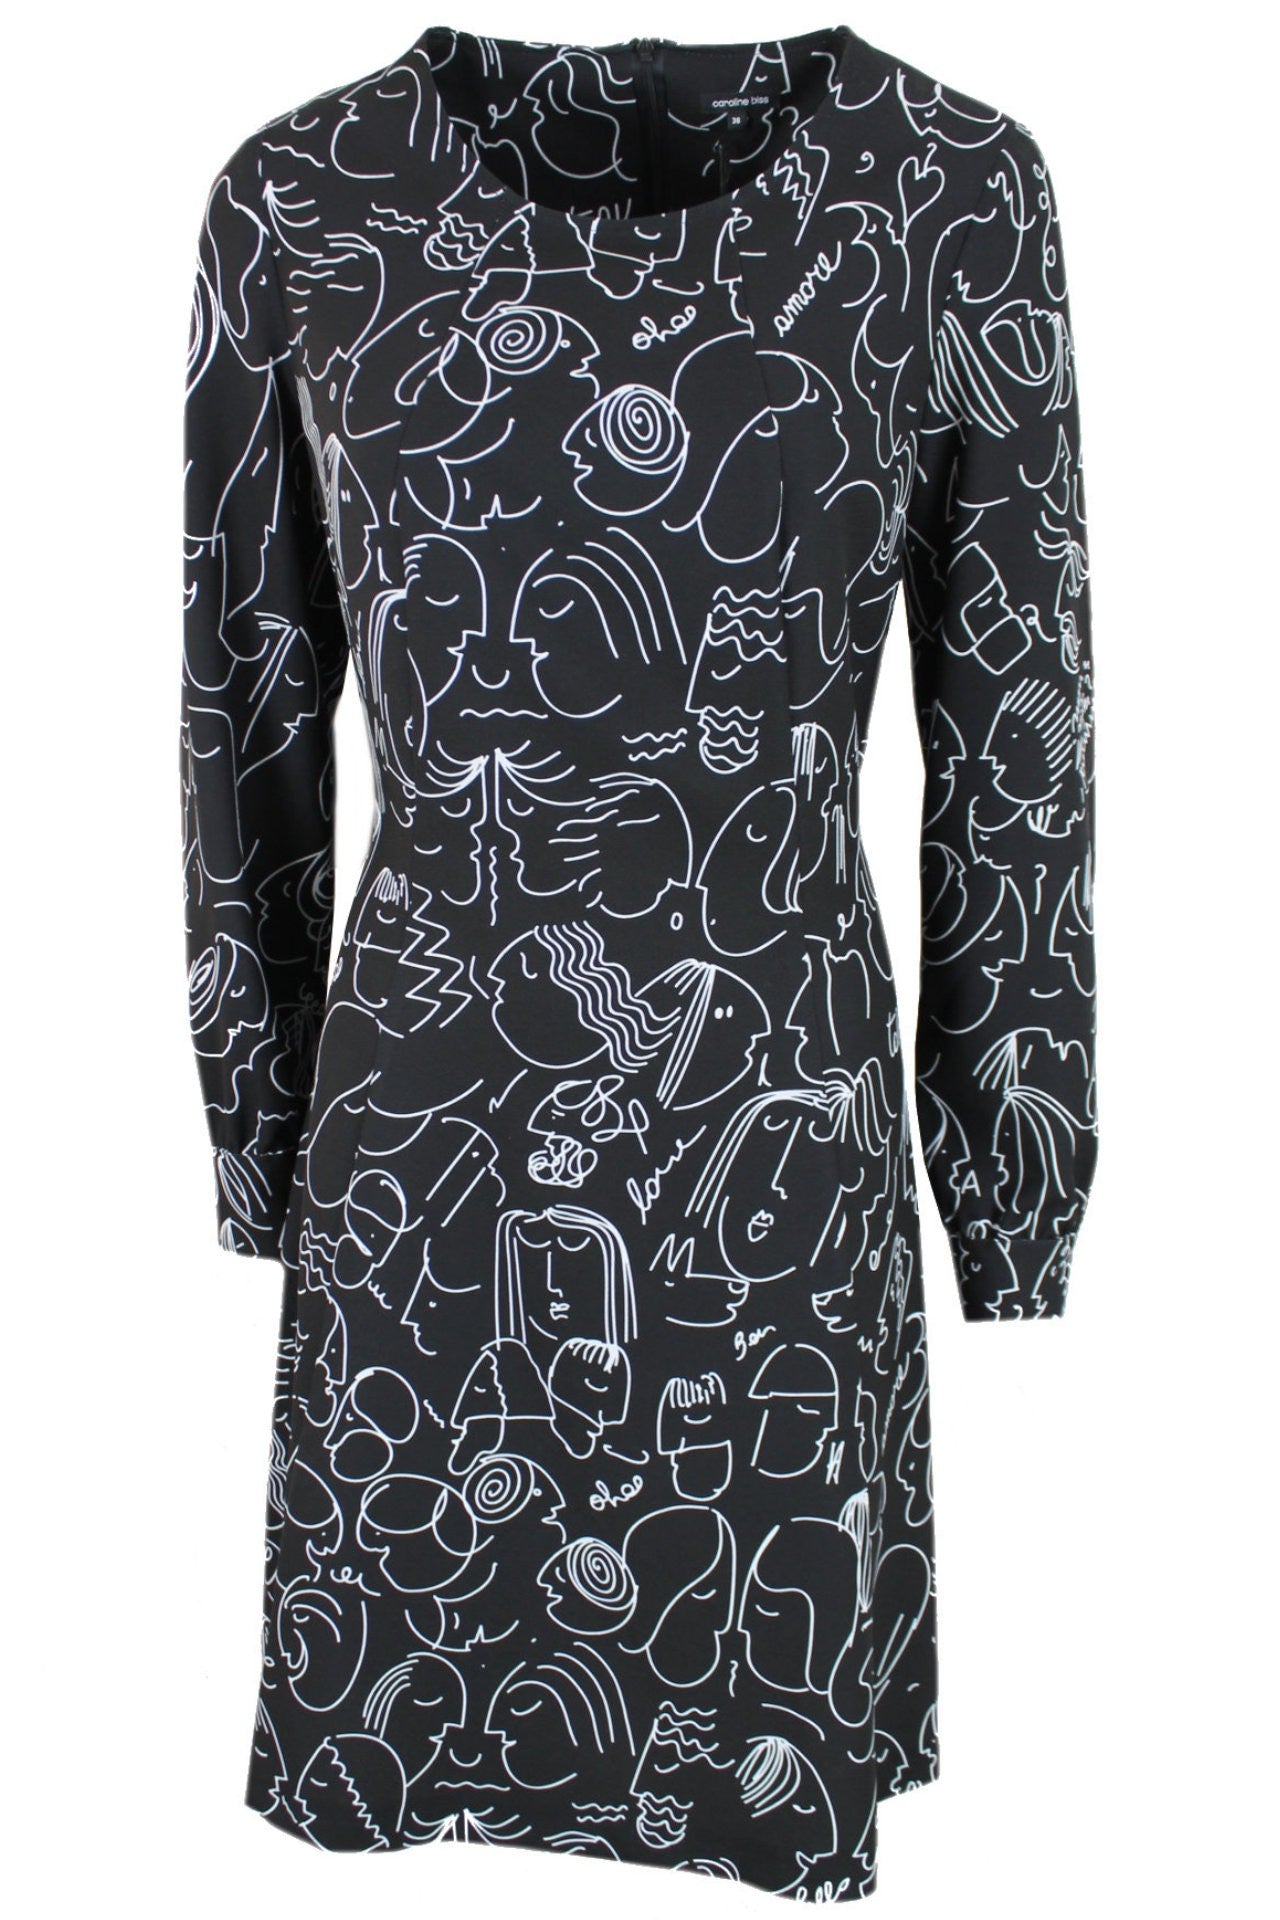 Kreunt Ambacht dorp Caroline Biss zwarte jurk met een creatief wit design. – Rosa Fashion Outlet